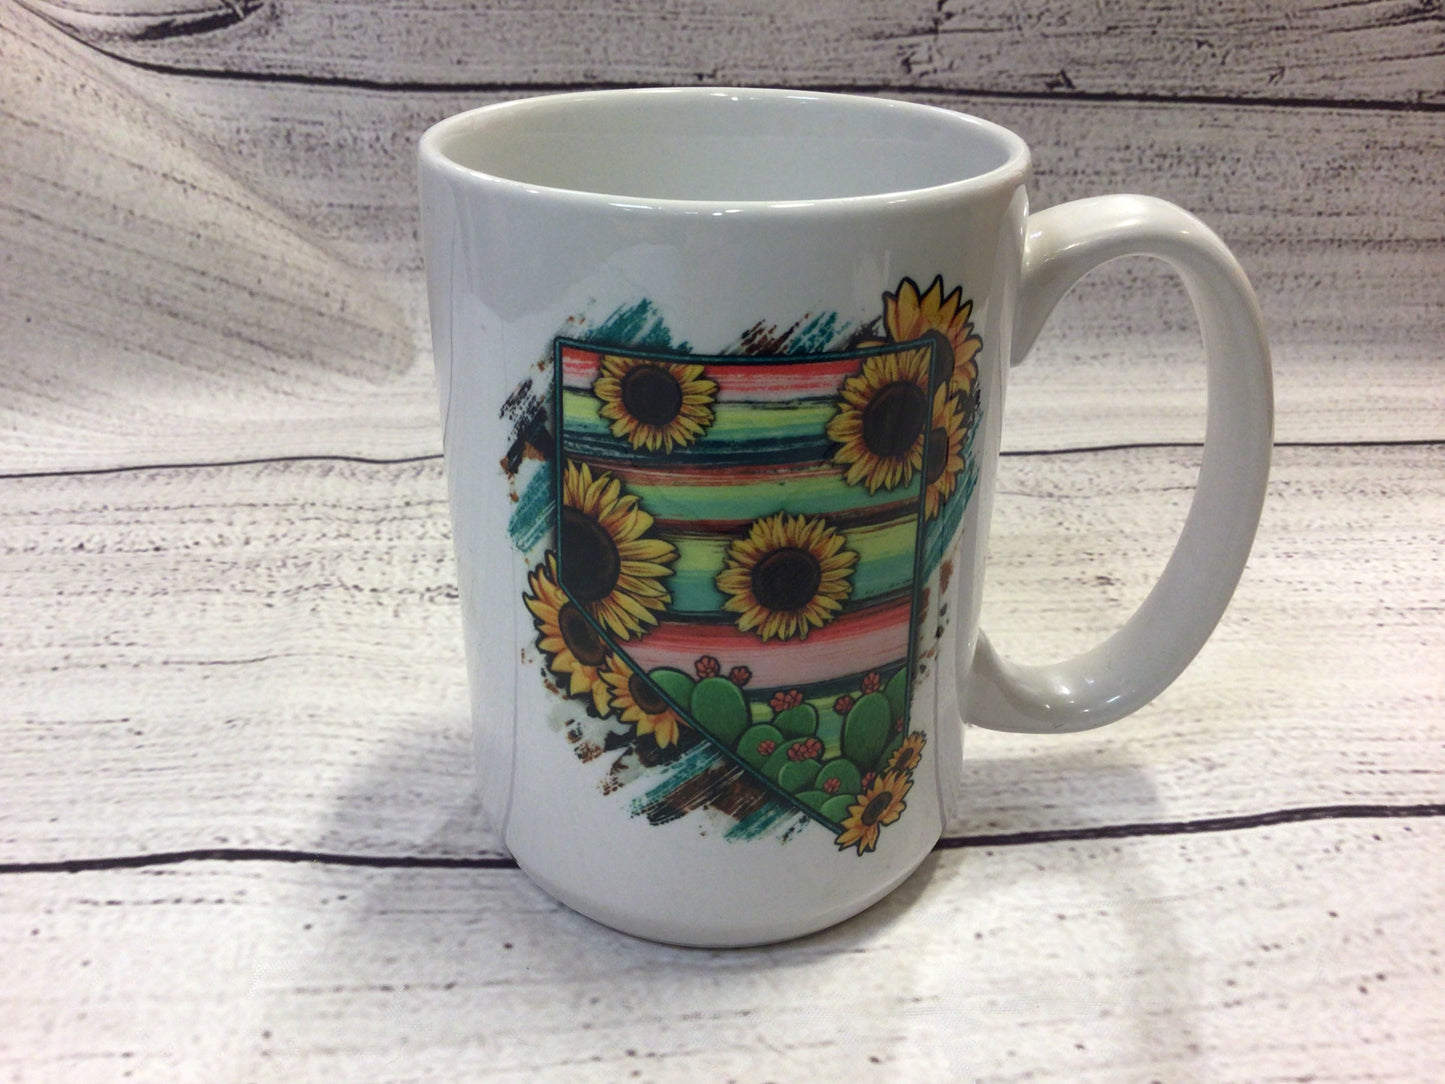 NV Sunflower and Cactus mug